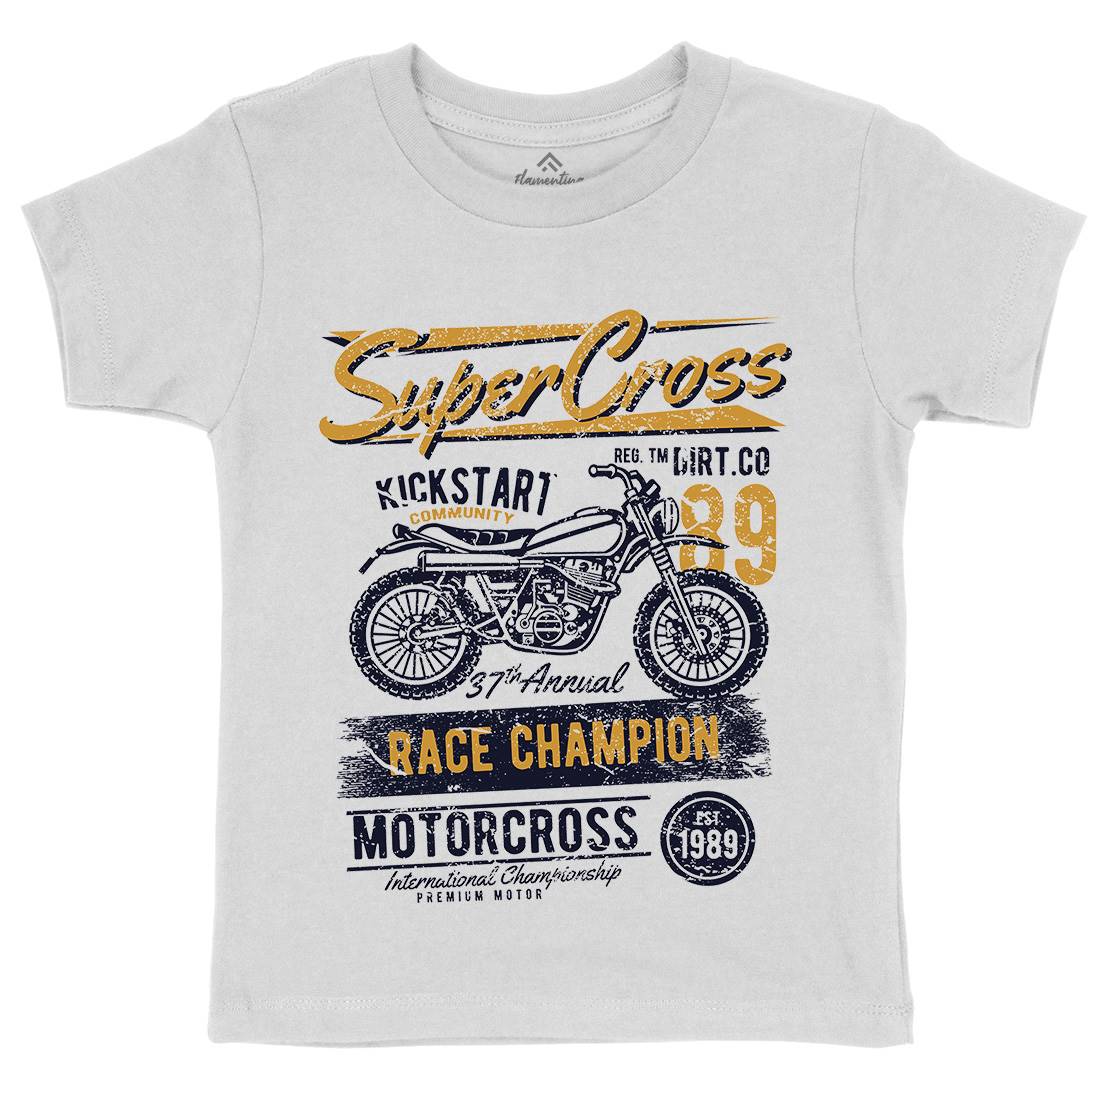 Super Cross Kids Crew Neck T-Shirt Motorcycles A165